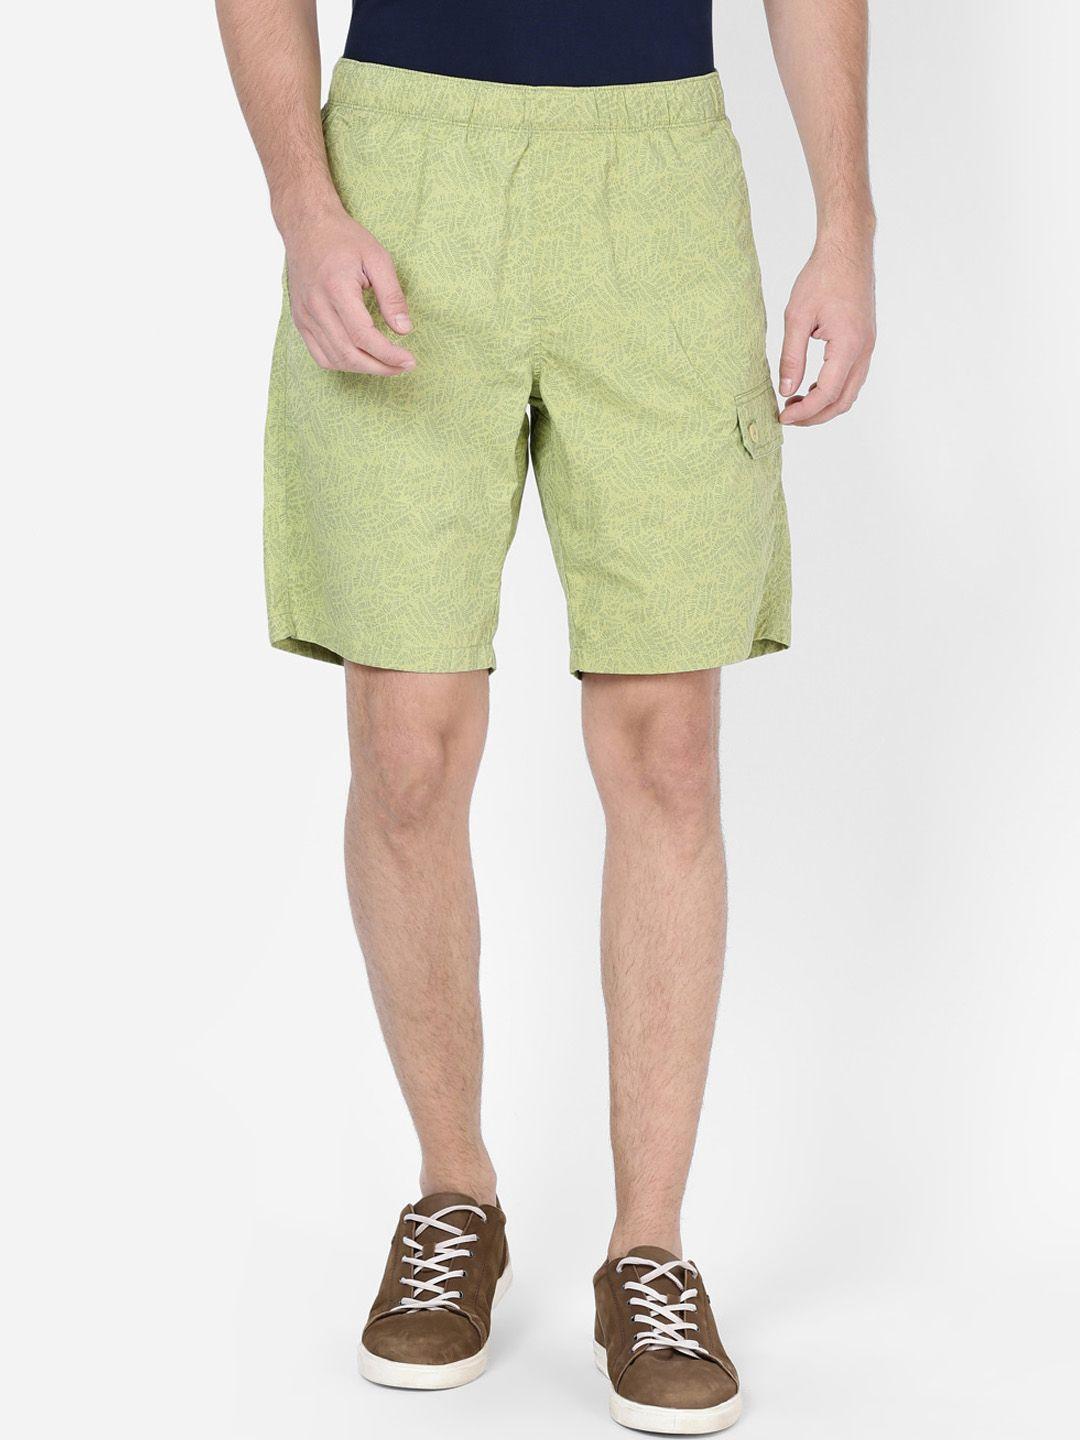 t-base men lime green printed regular shorts